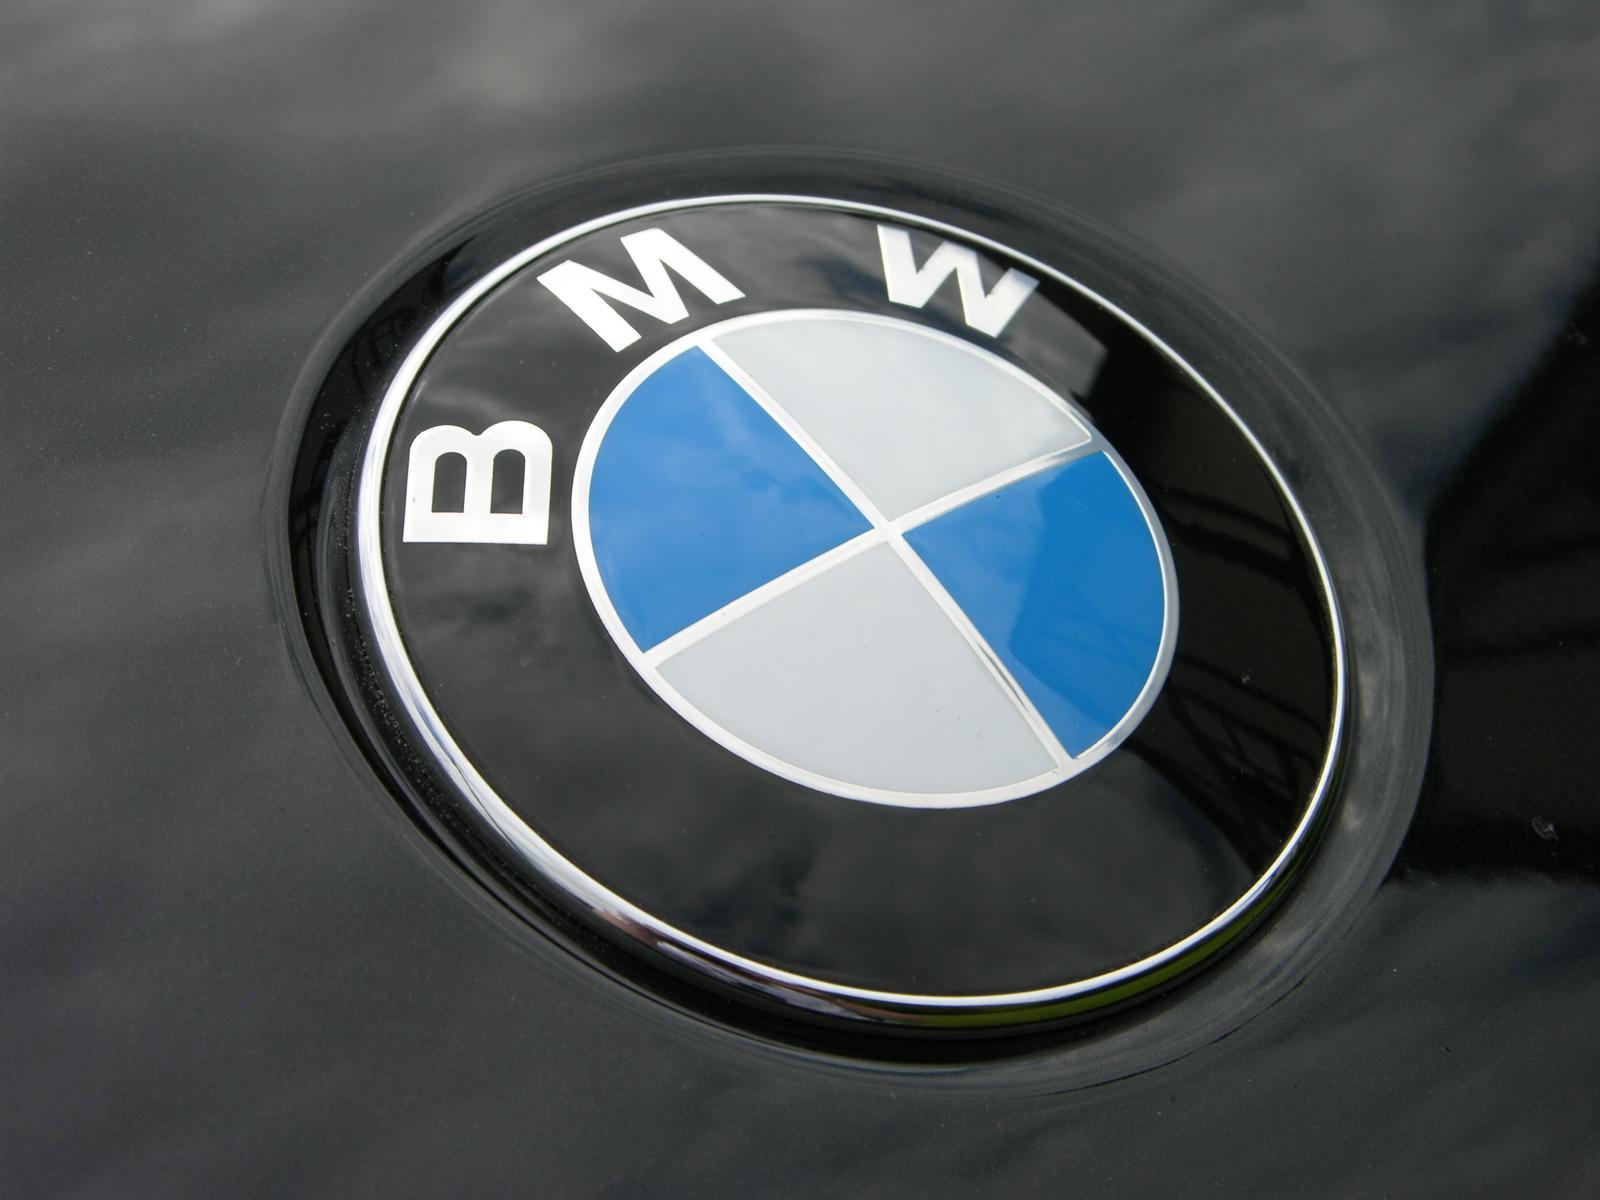 bmw logo fond d'écran hd,bmw,emblème,véhicule,voiture de luxe personnelle,voiture